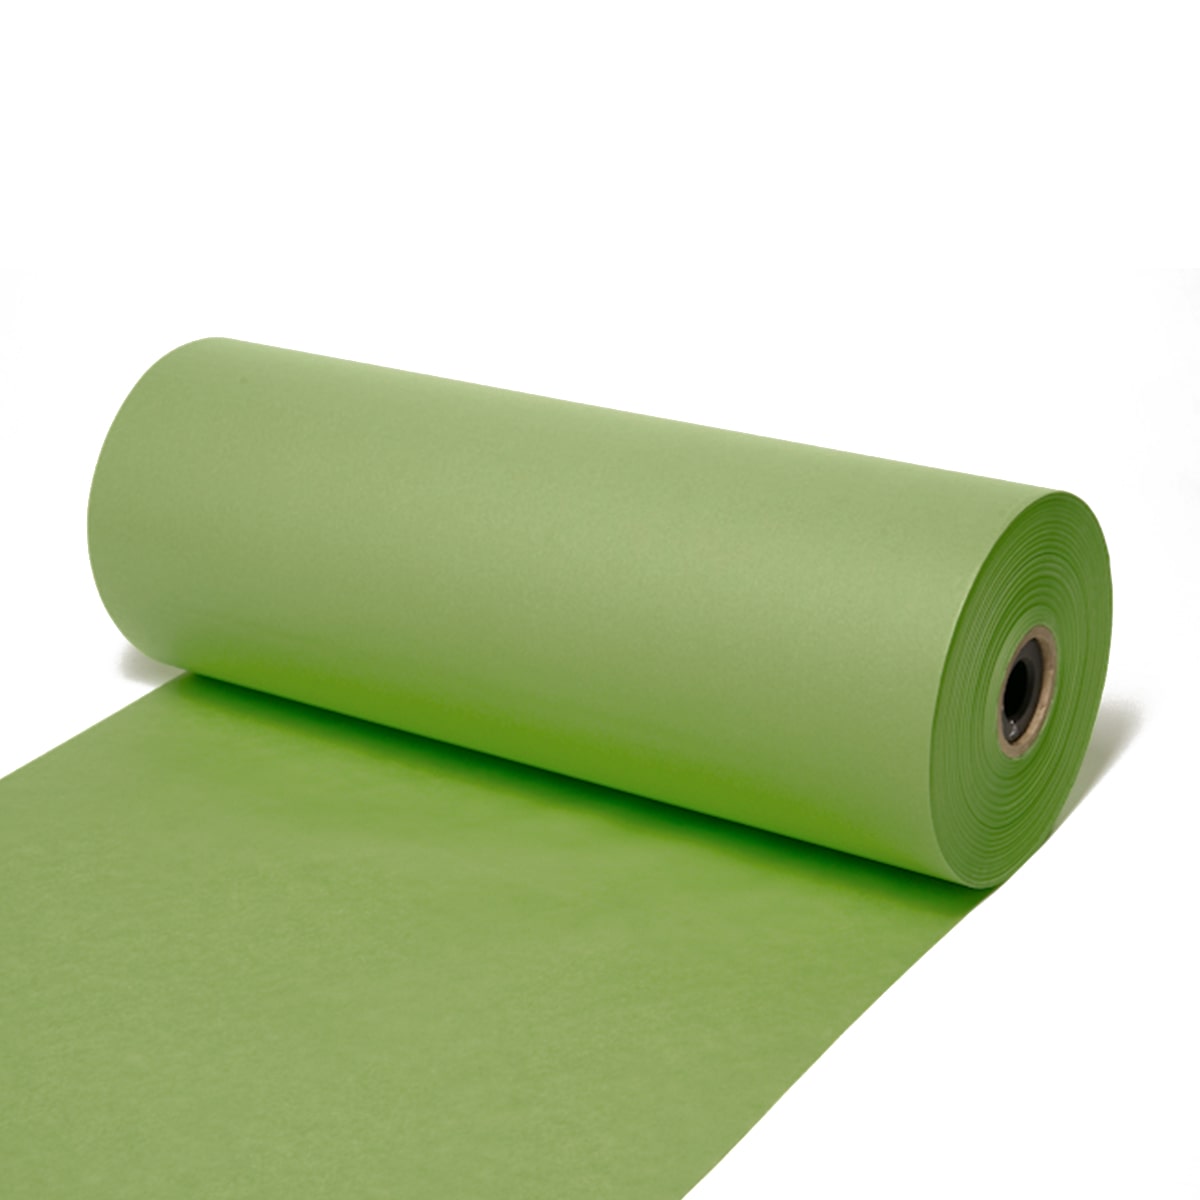 Seidenpapier Schilfgrün, 50 cm breit, 500 Meter / Rolle